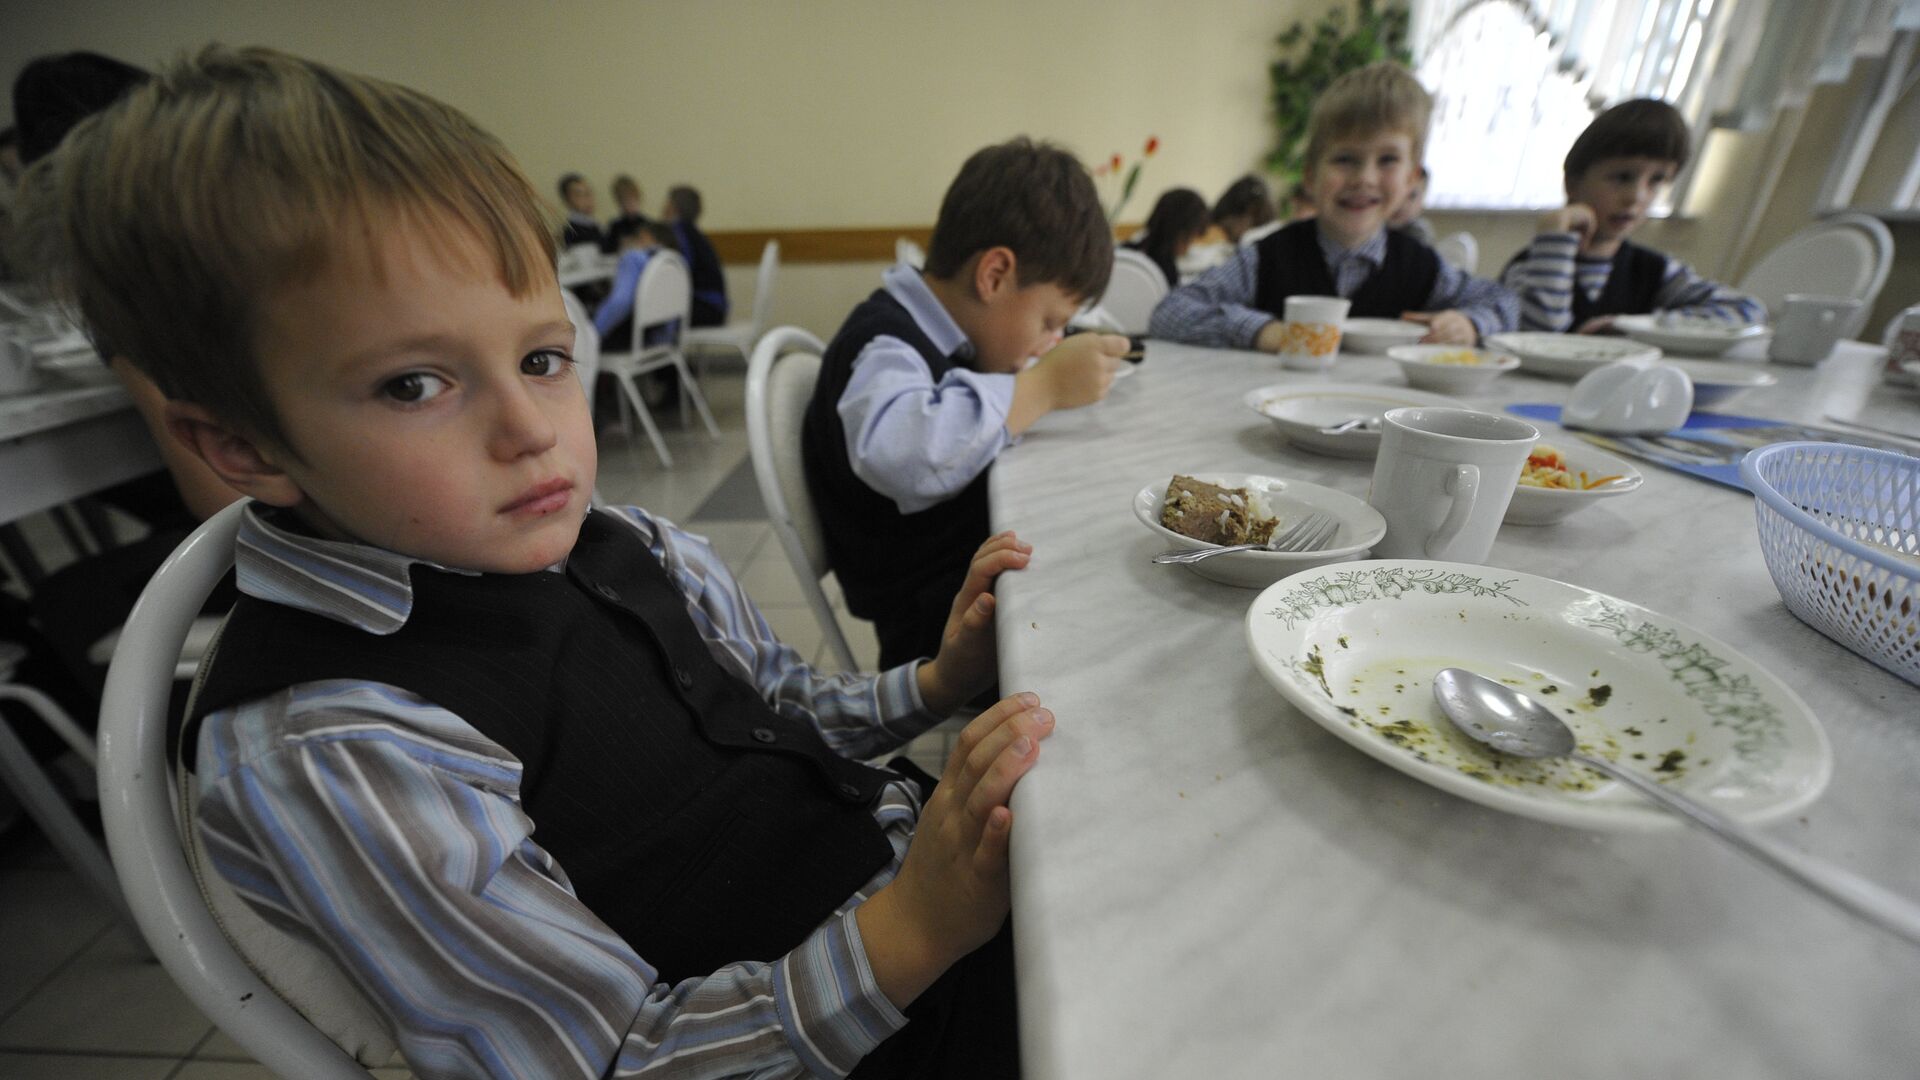 Дети обедают в школьной столовой - Sputnik Латвия, 1920, 04.02.2021